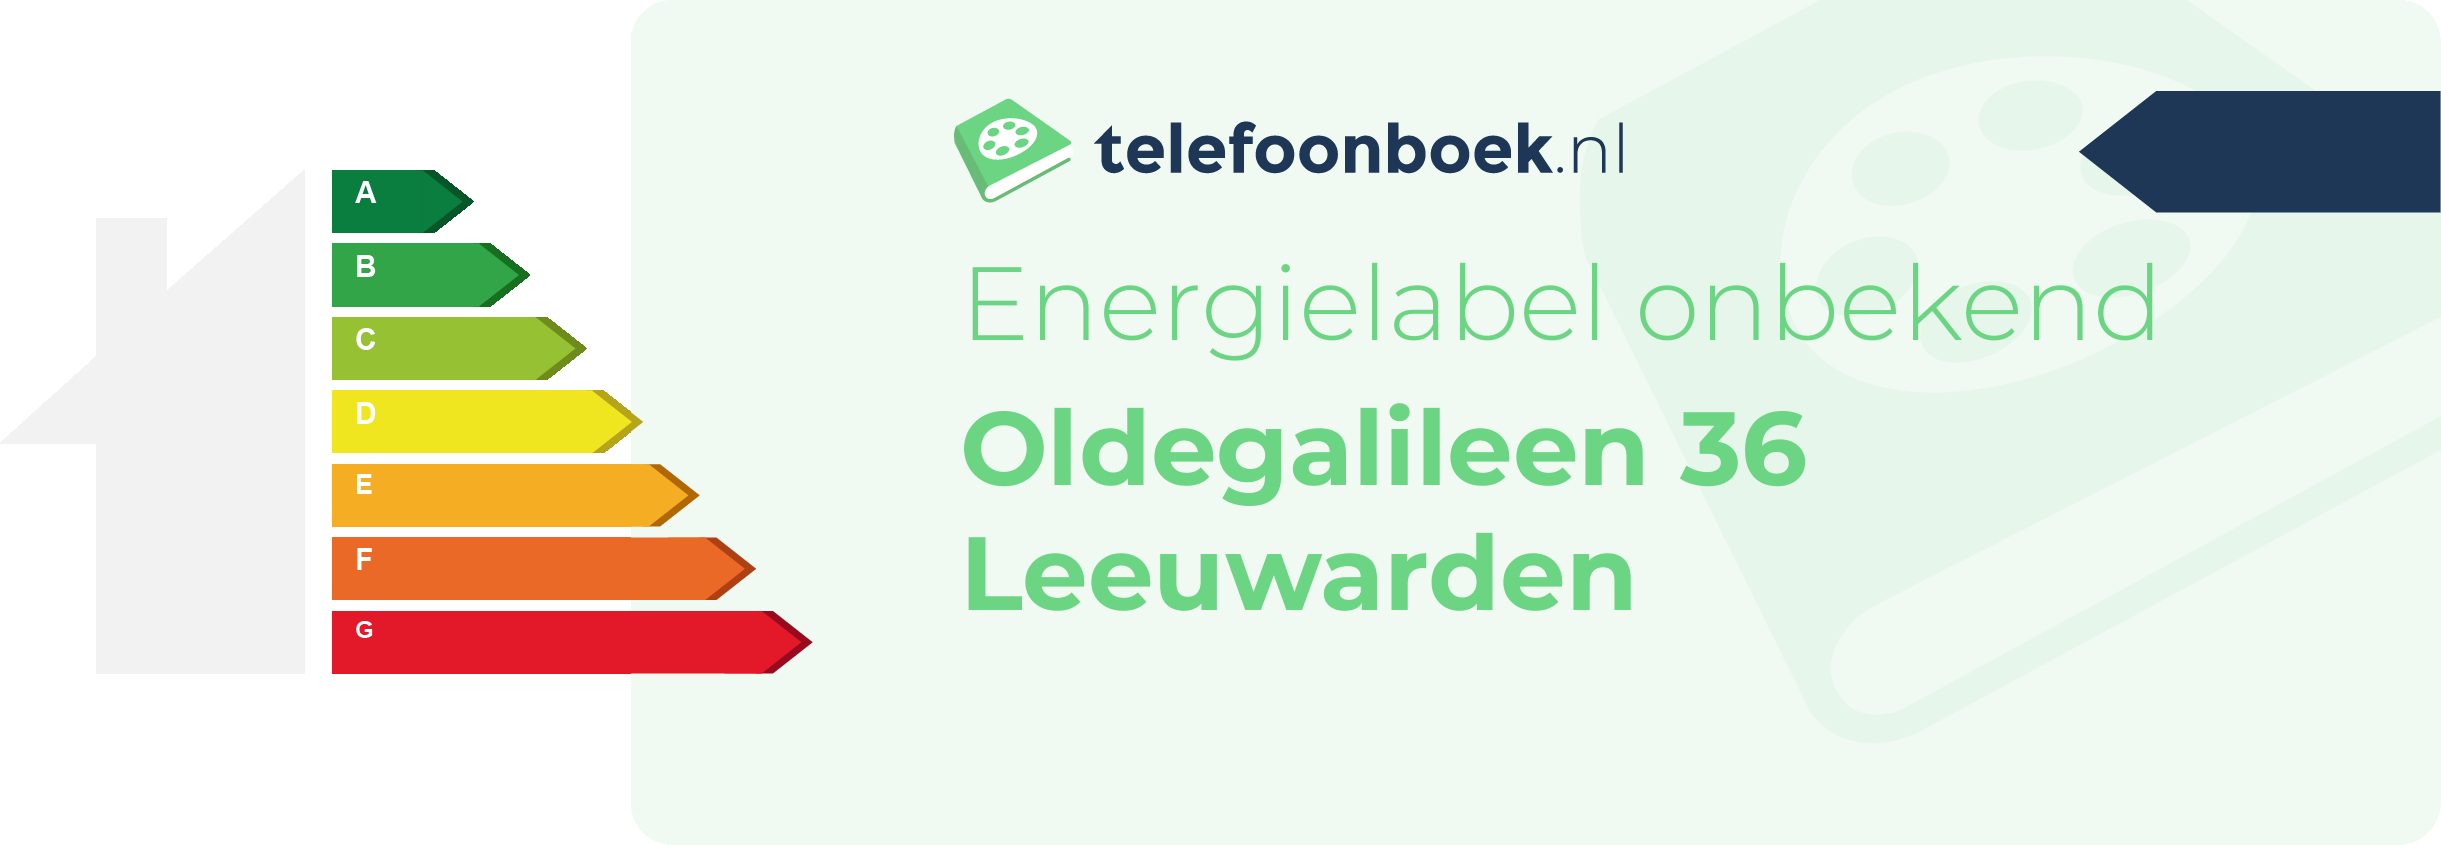 Energielabel Oldegalileen 36 Leeuwarden